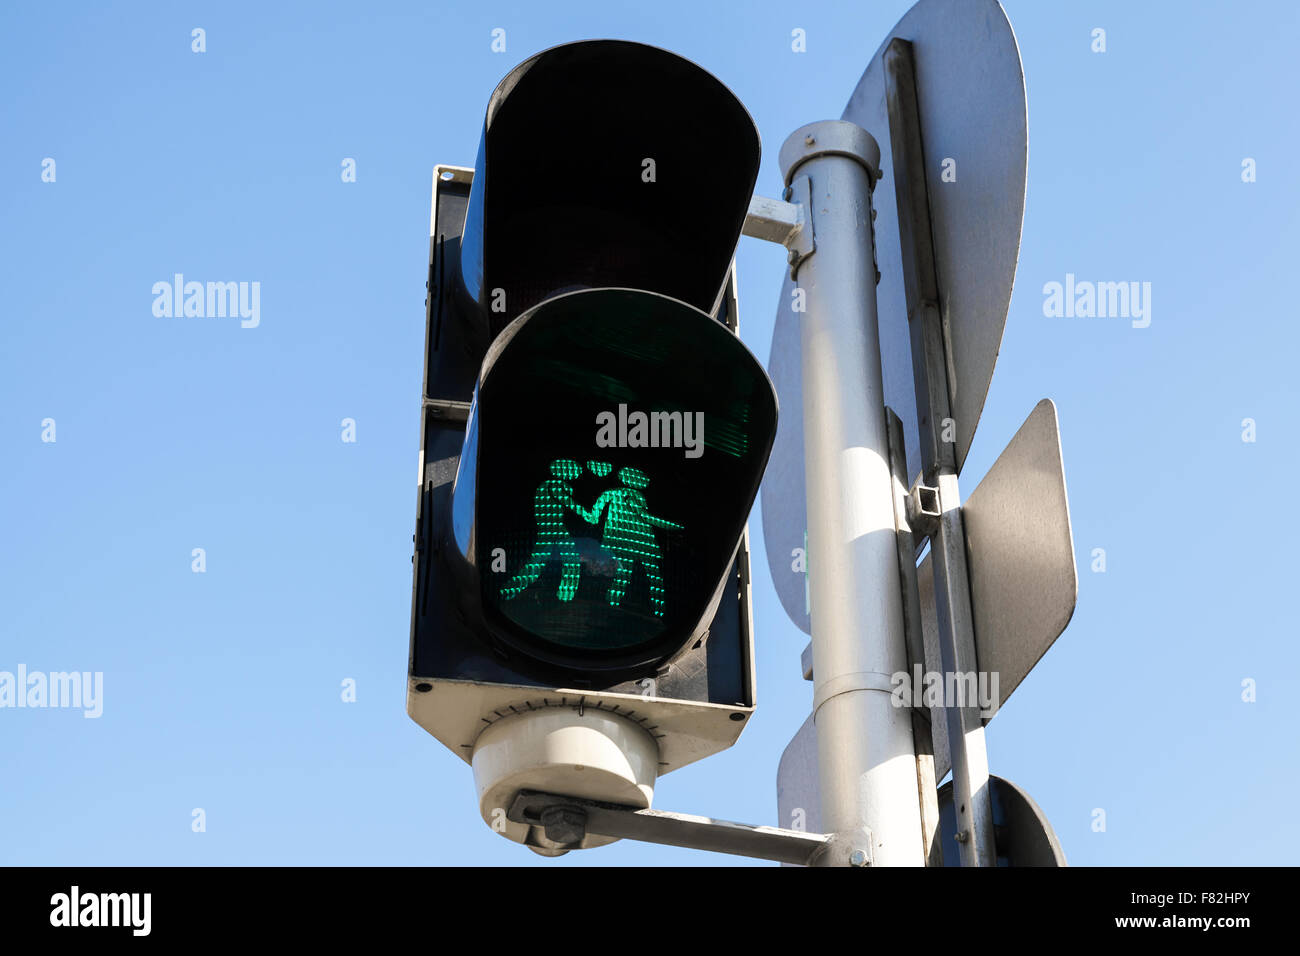 Fußgängerampel mit grünen Liebhaber Originalsignal, Wien, Österreich Stockfoto